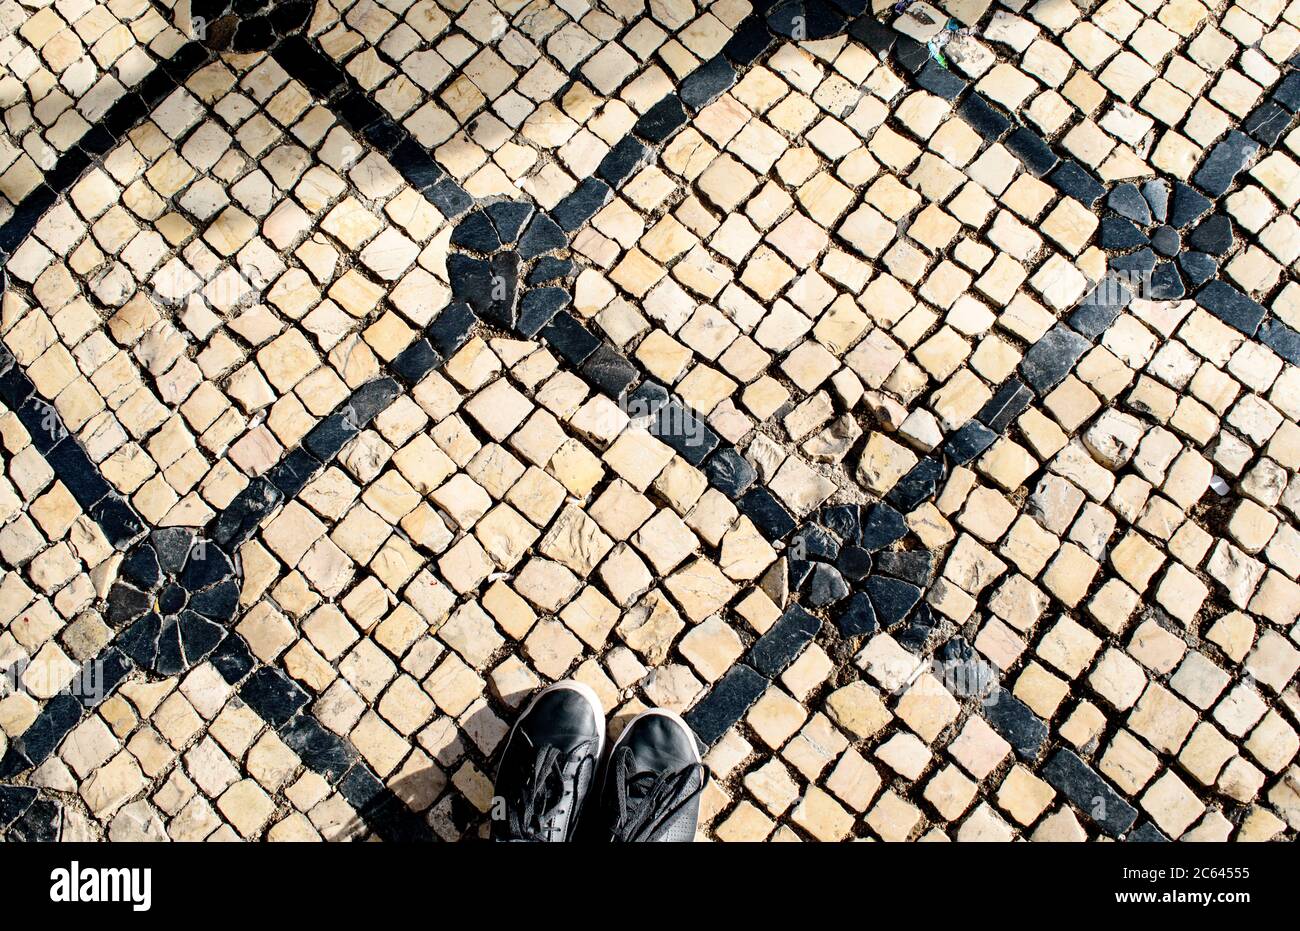 Une paire de chaussures noires se trouve sur le calcada noir et blanc, pavés portugais en mosaïque, sur la Rua Garrett à Lisbonne. Banque D'Images